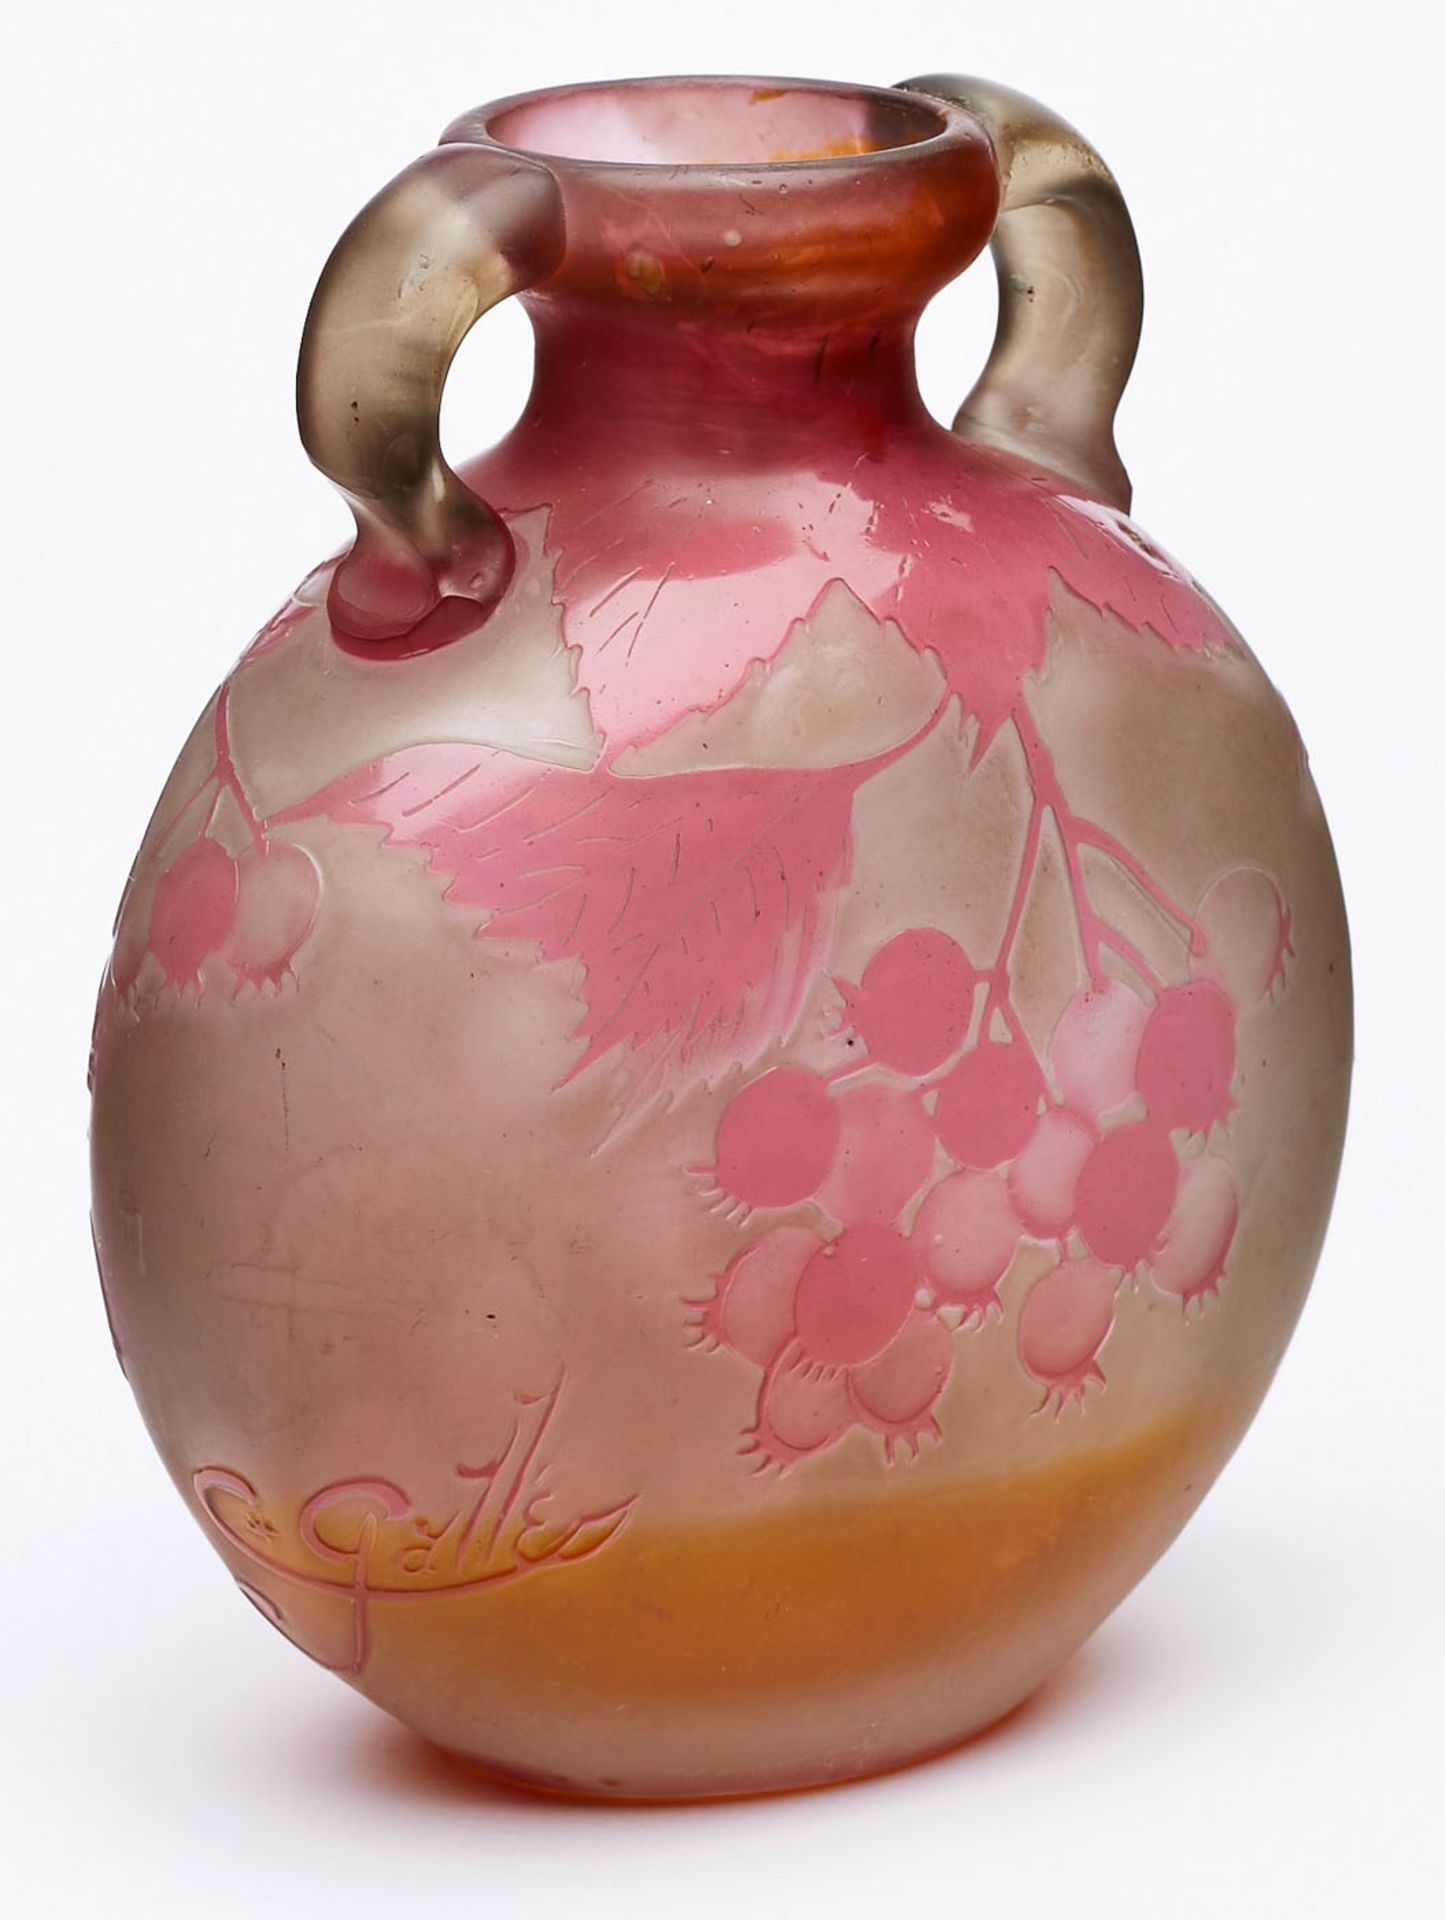 Vase mit Beerendekor, Gallé um 1904. - Bild 2 aus 2